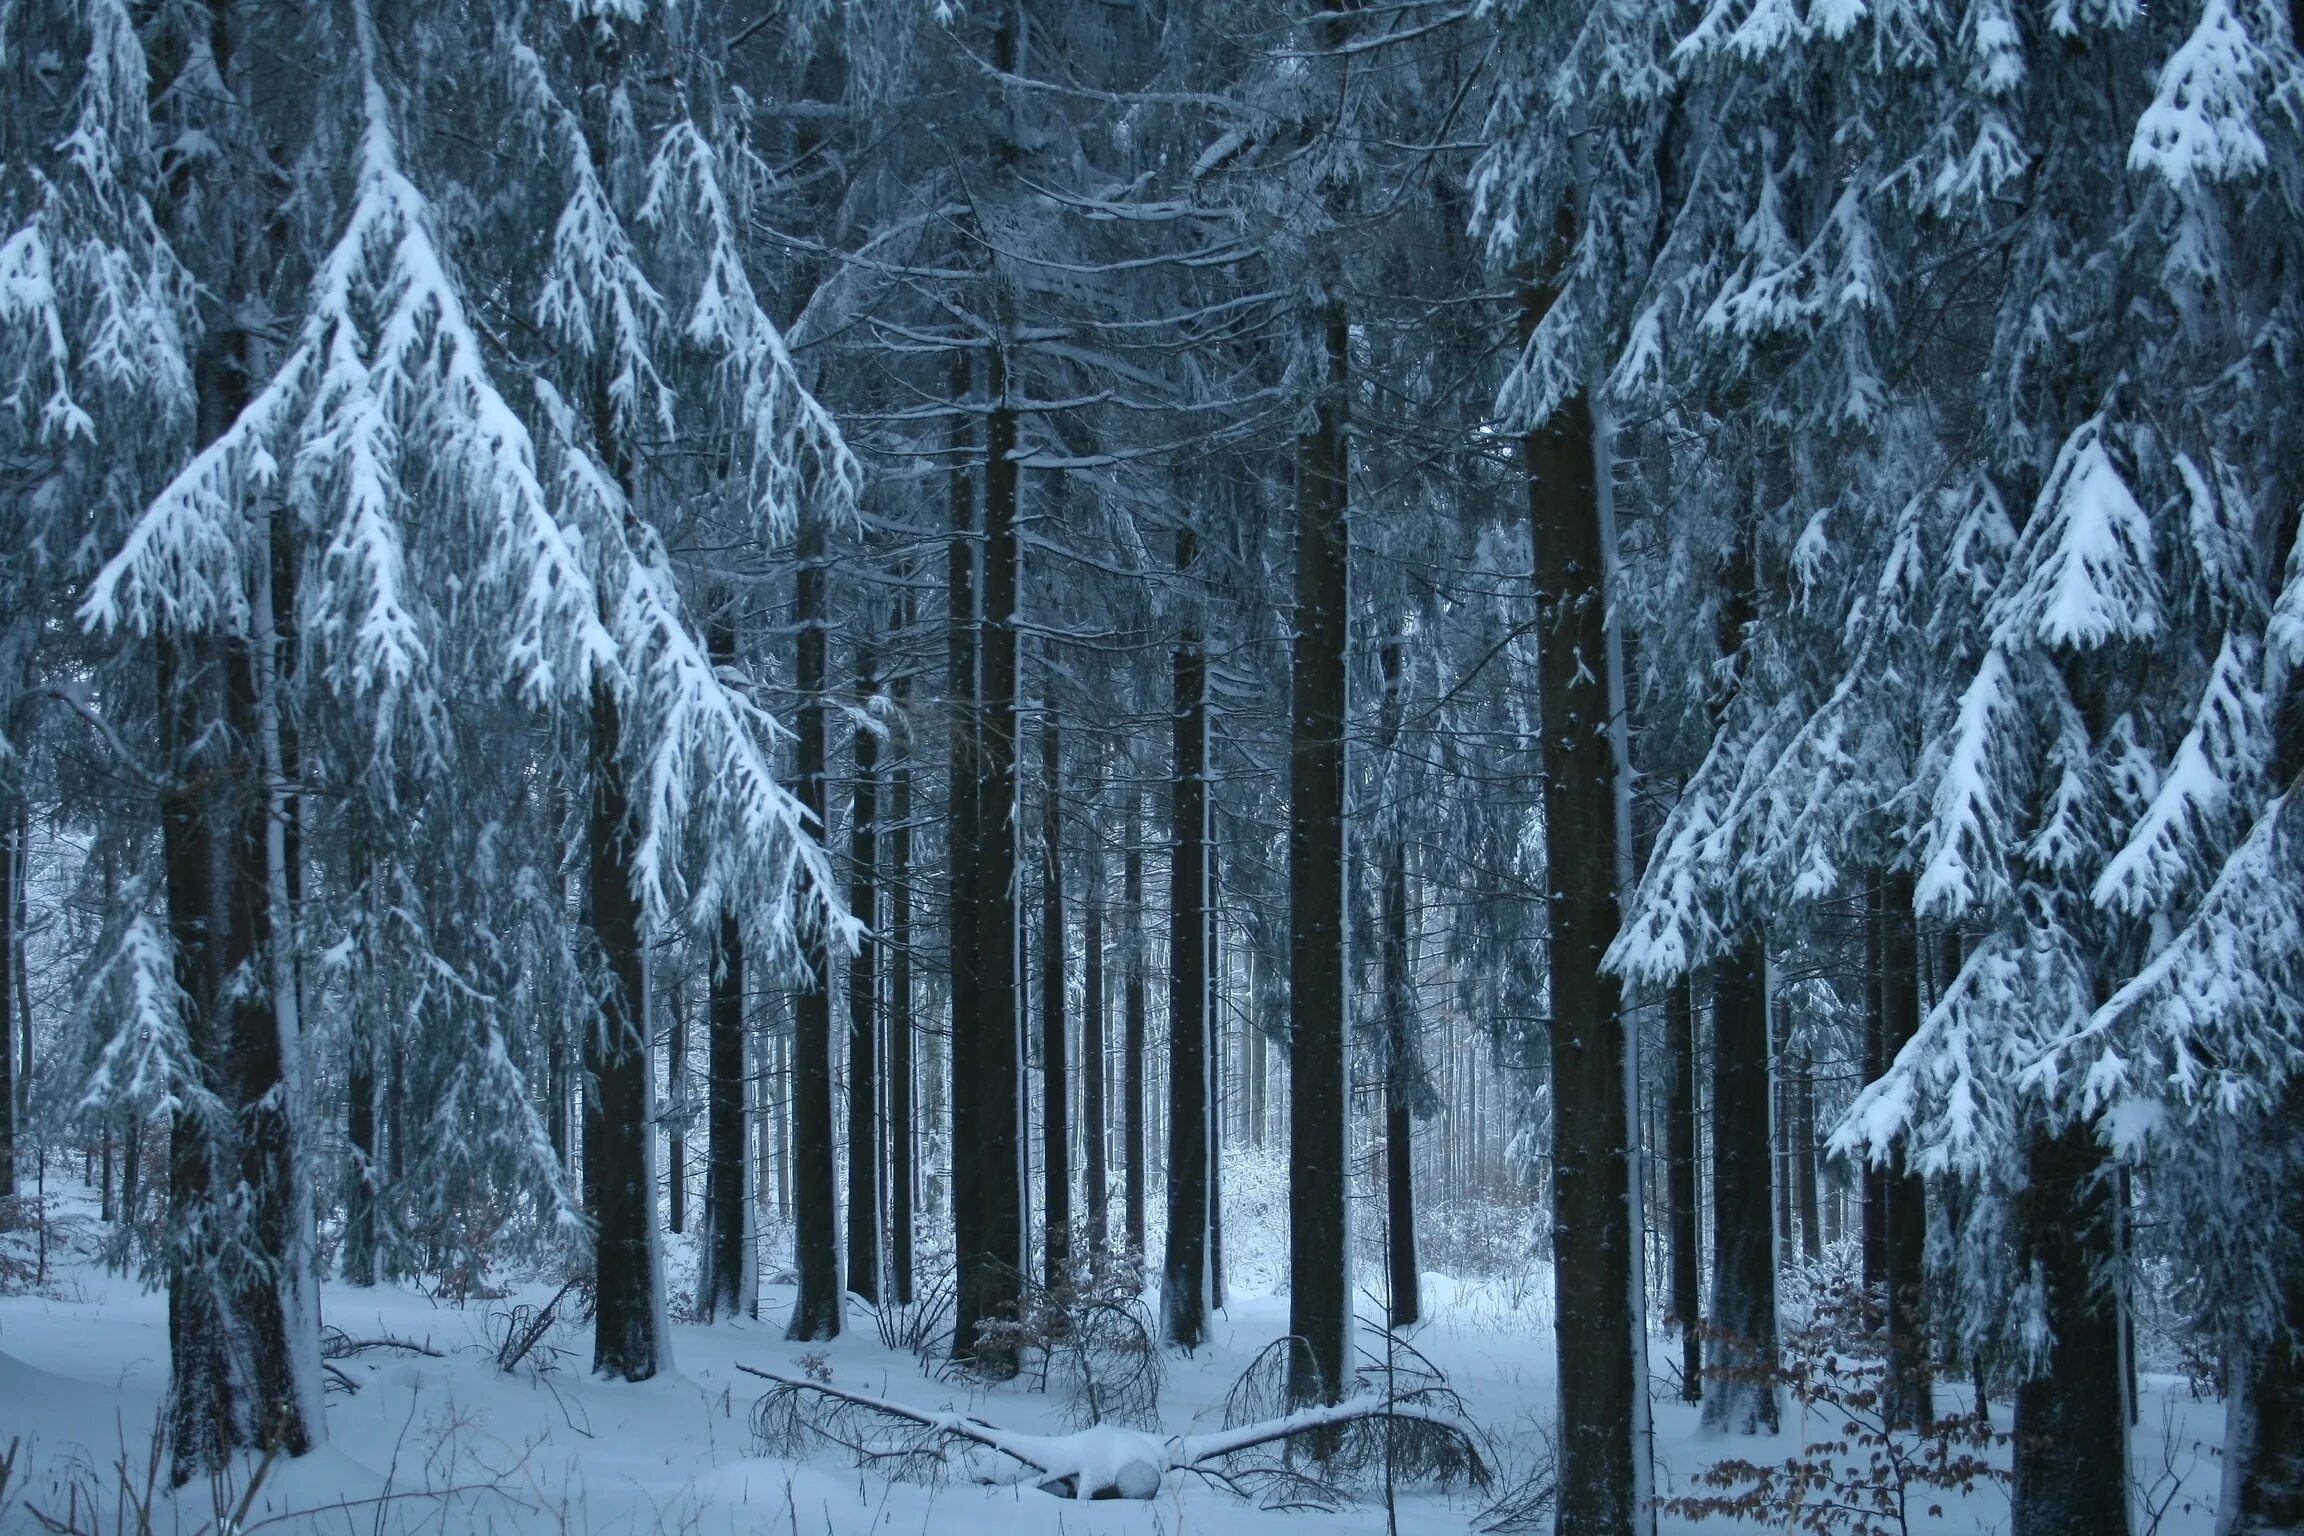 Фф и в морозном лесу навеки останусь. Зимний лес. Зимой в лесу. Заснеженный лес. Зимний еловый лес.